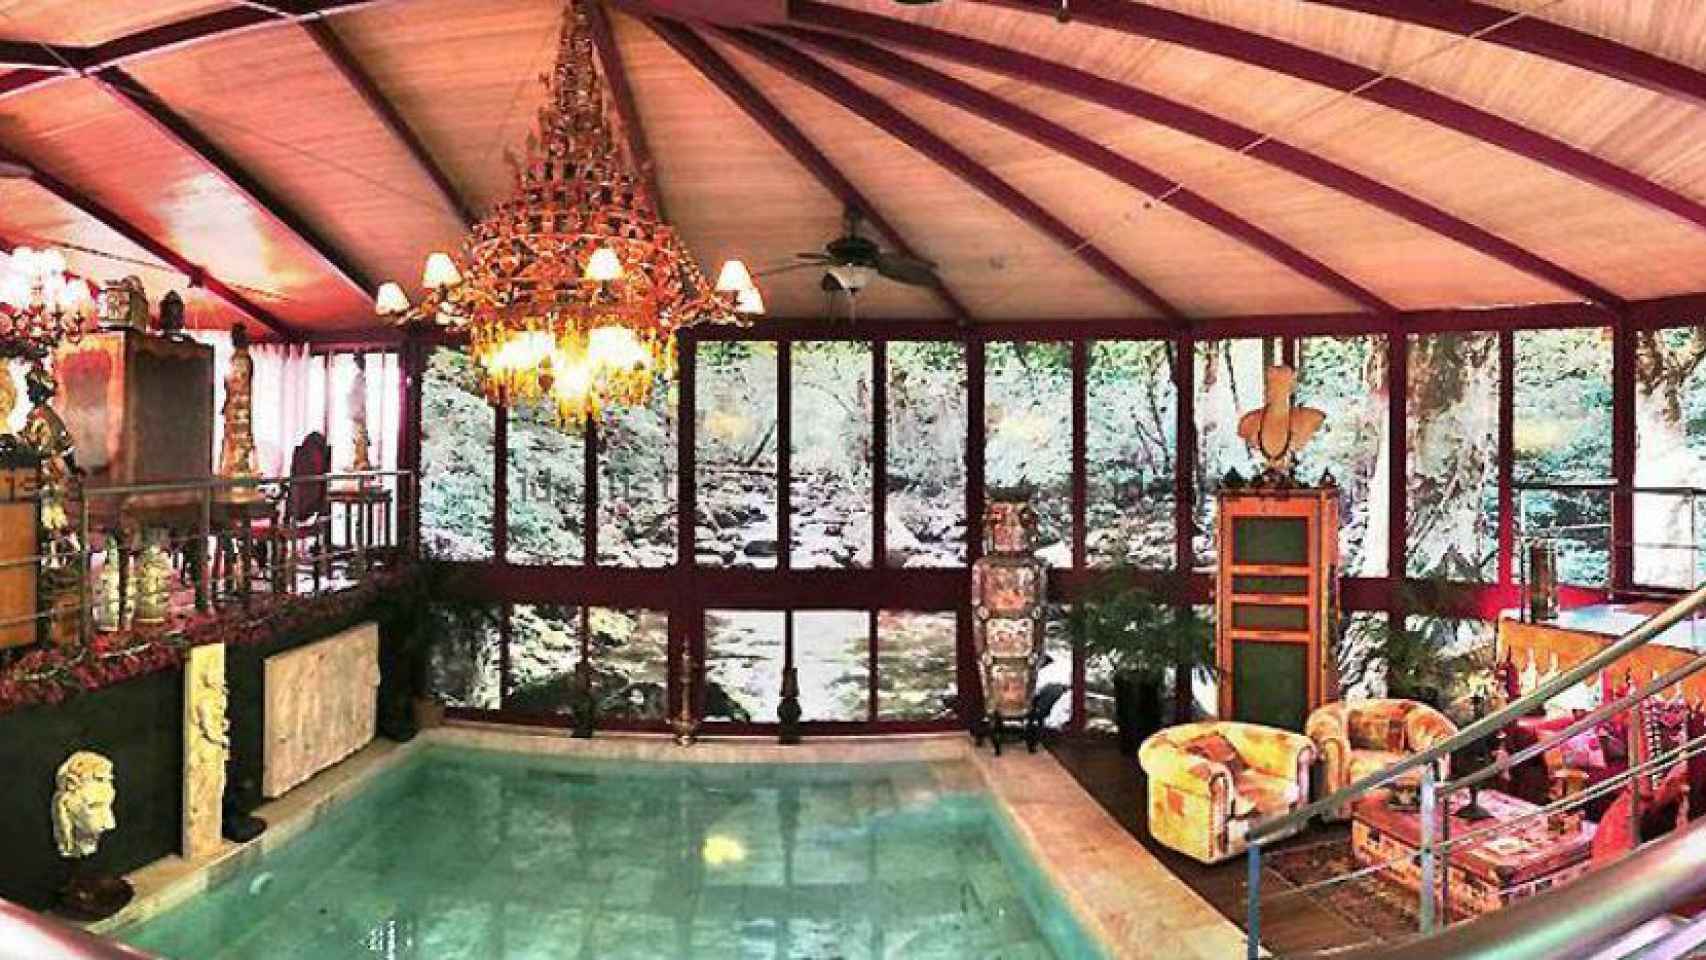 La casa cuenta con una piscina climatizada